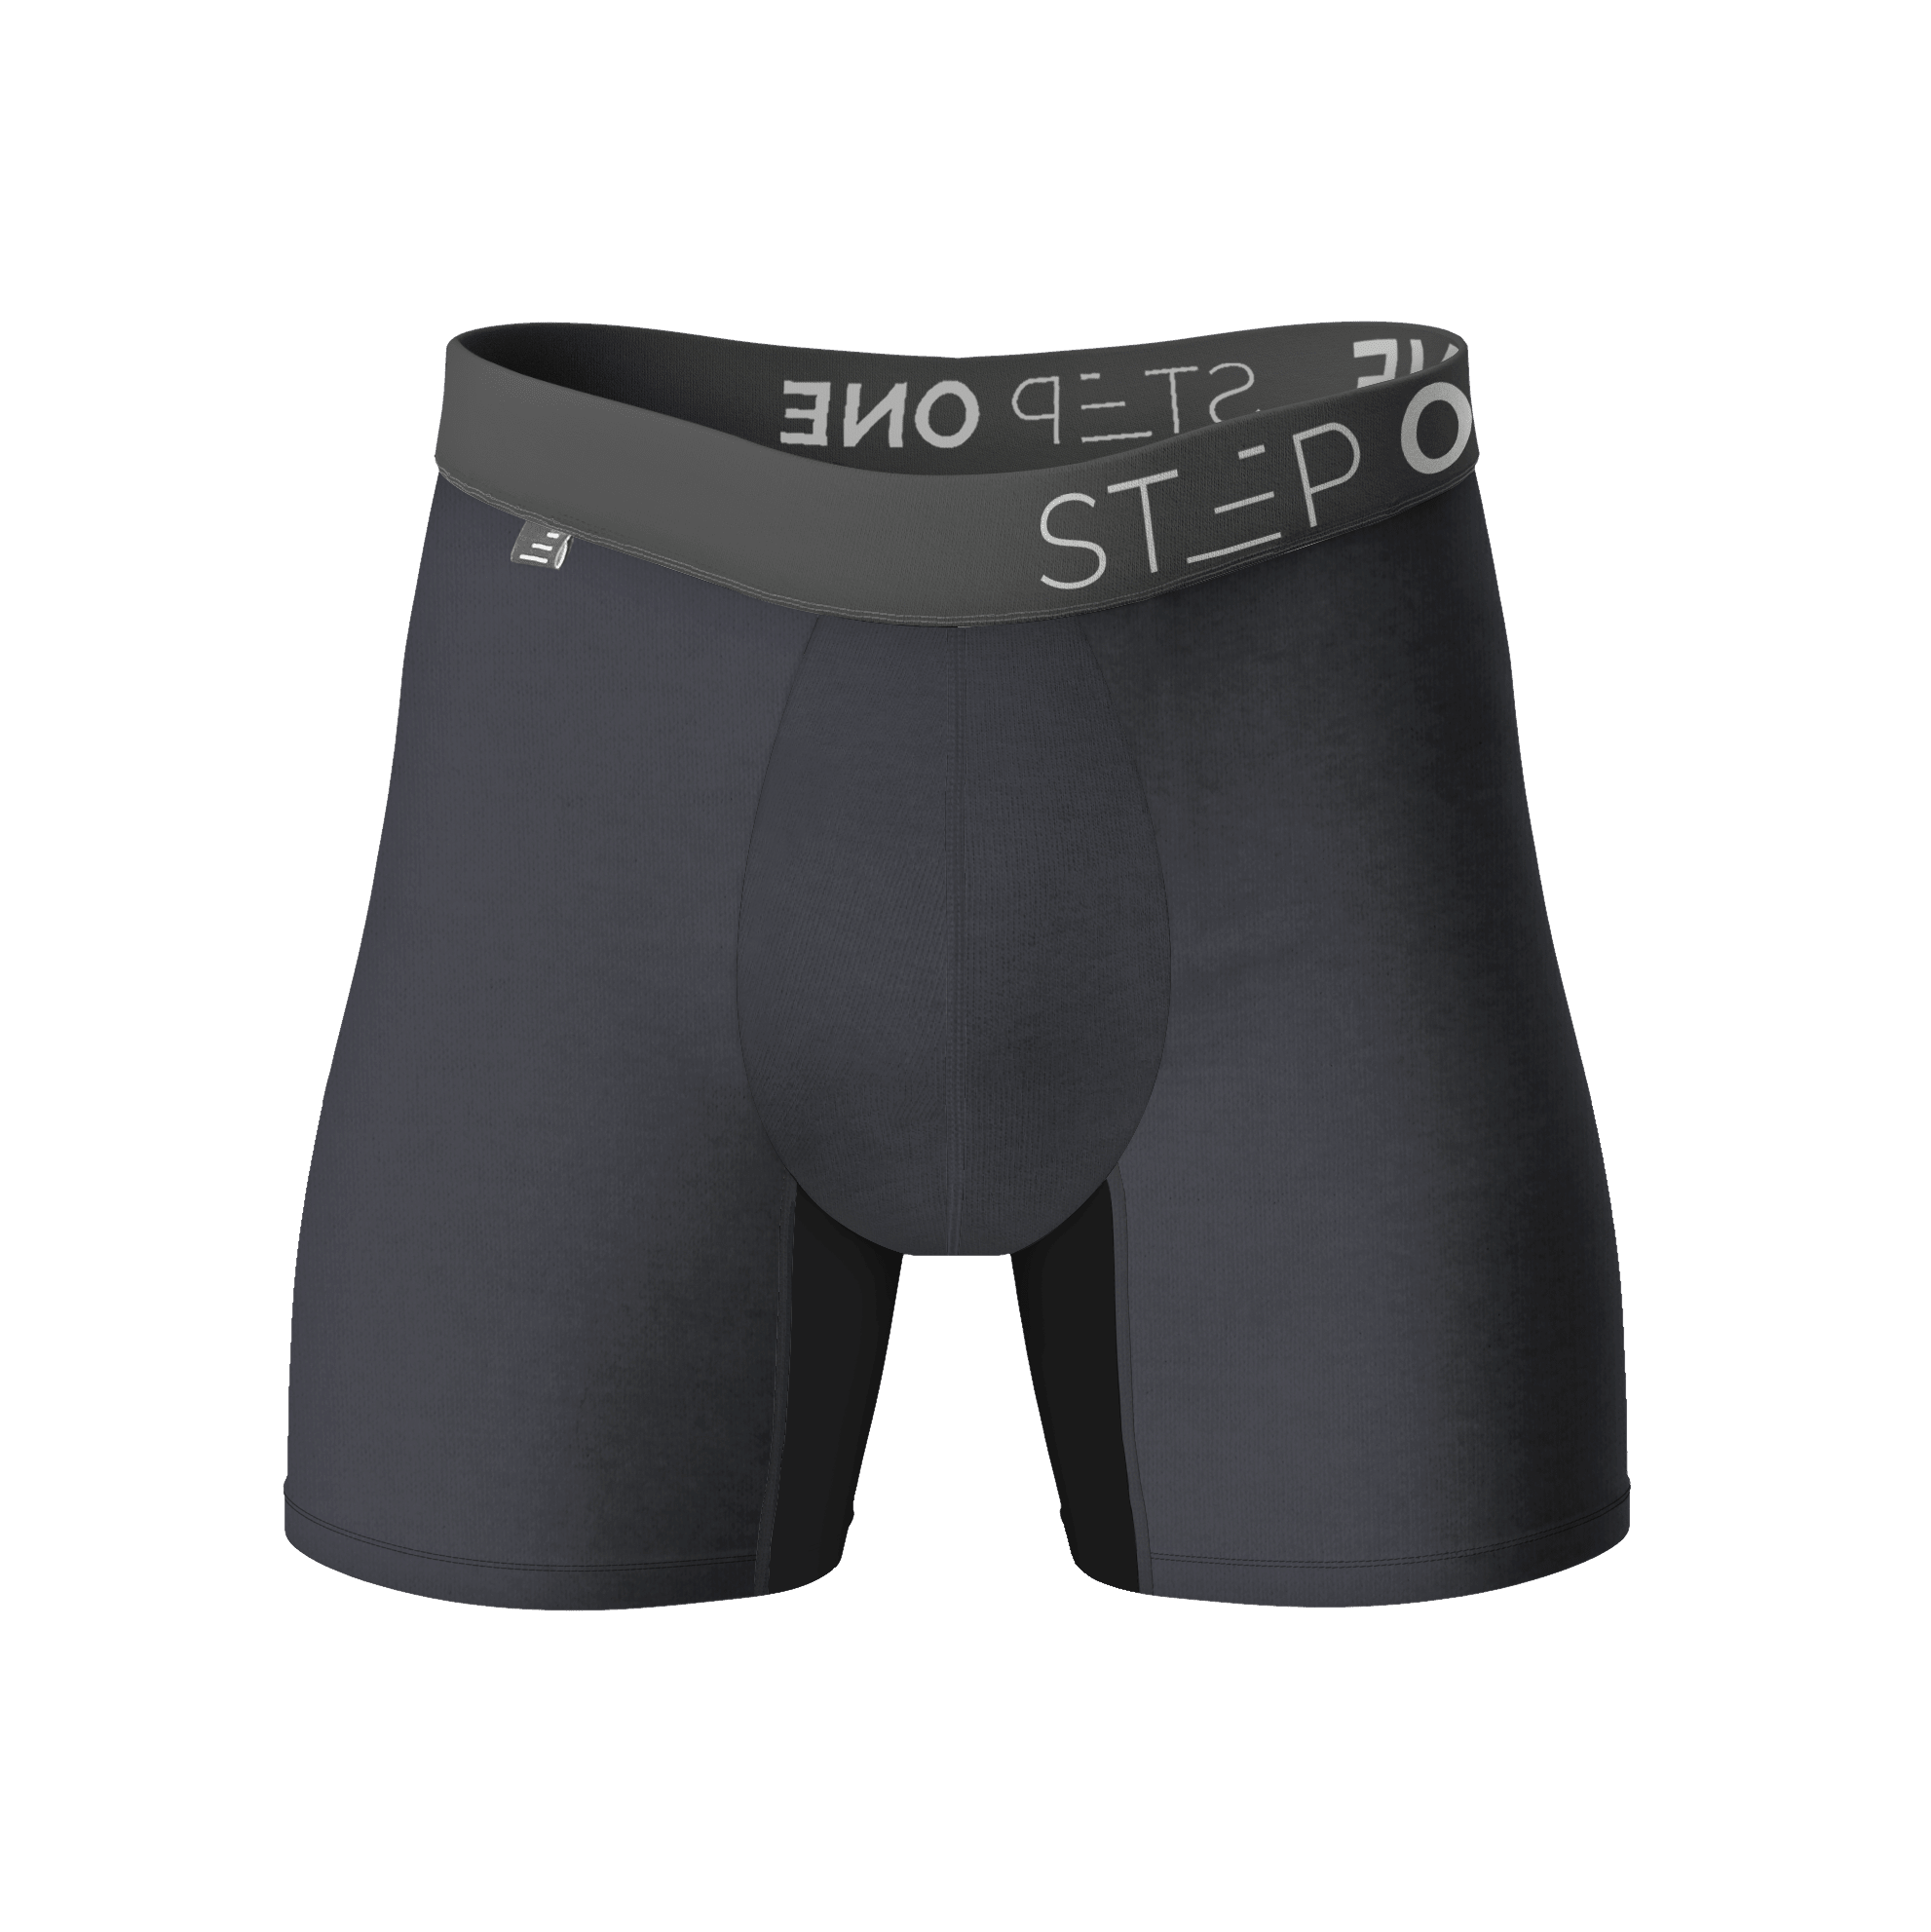 Boxer Brief - Smoking Gun  Step One Men's Bamboo Underwear